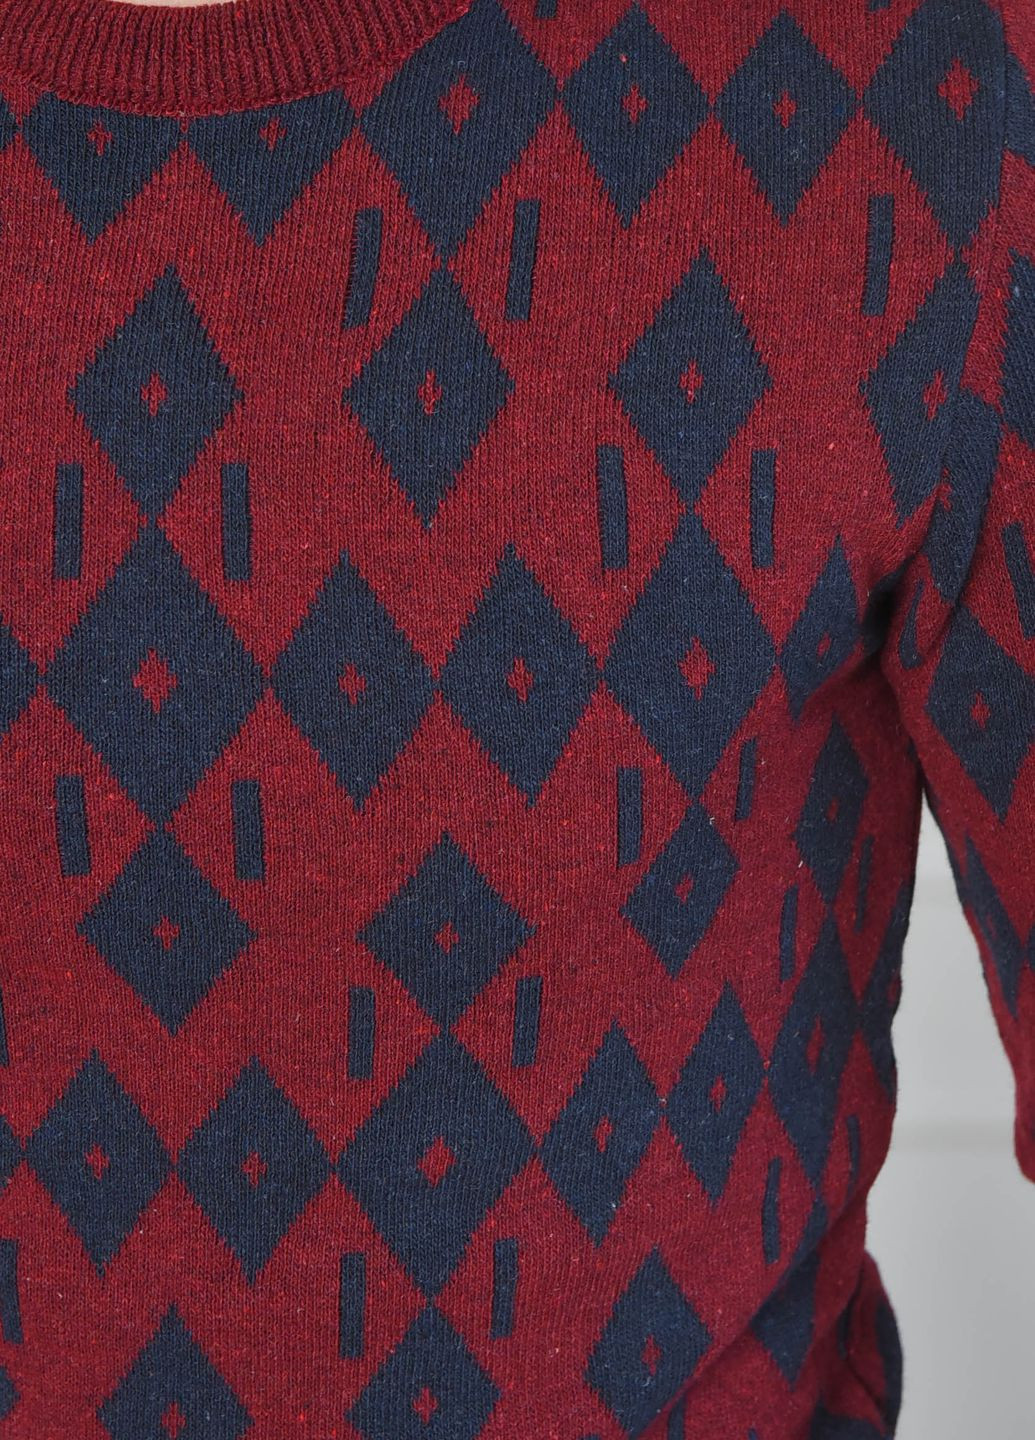 Бордовый зимний свитер мужской бордового цвета пуловер Let's Shop